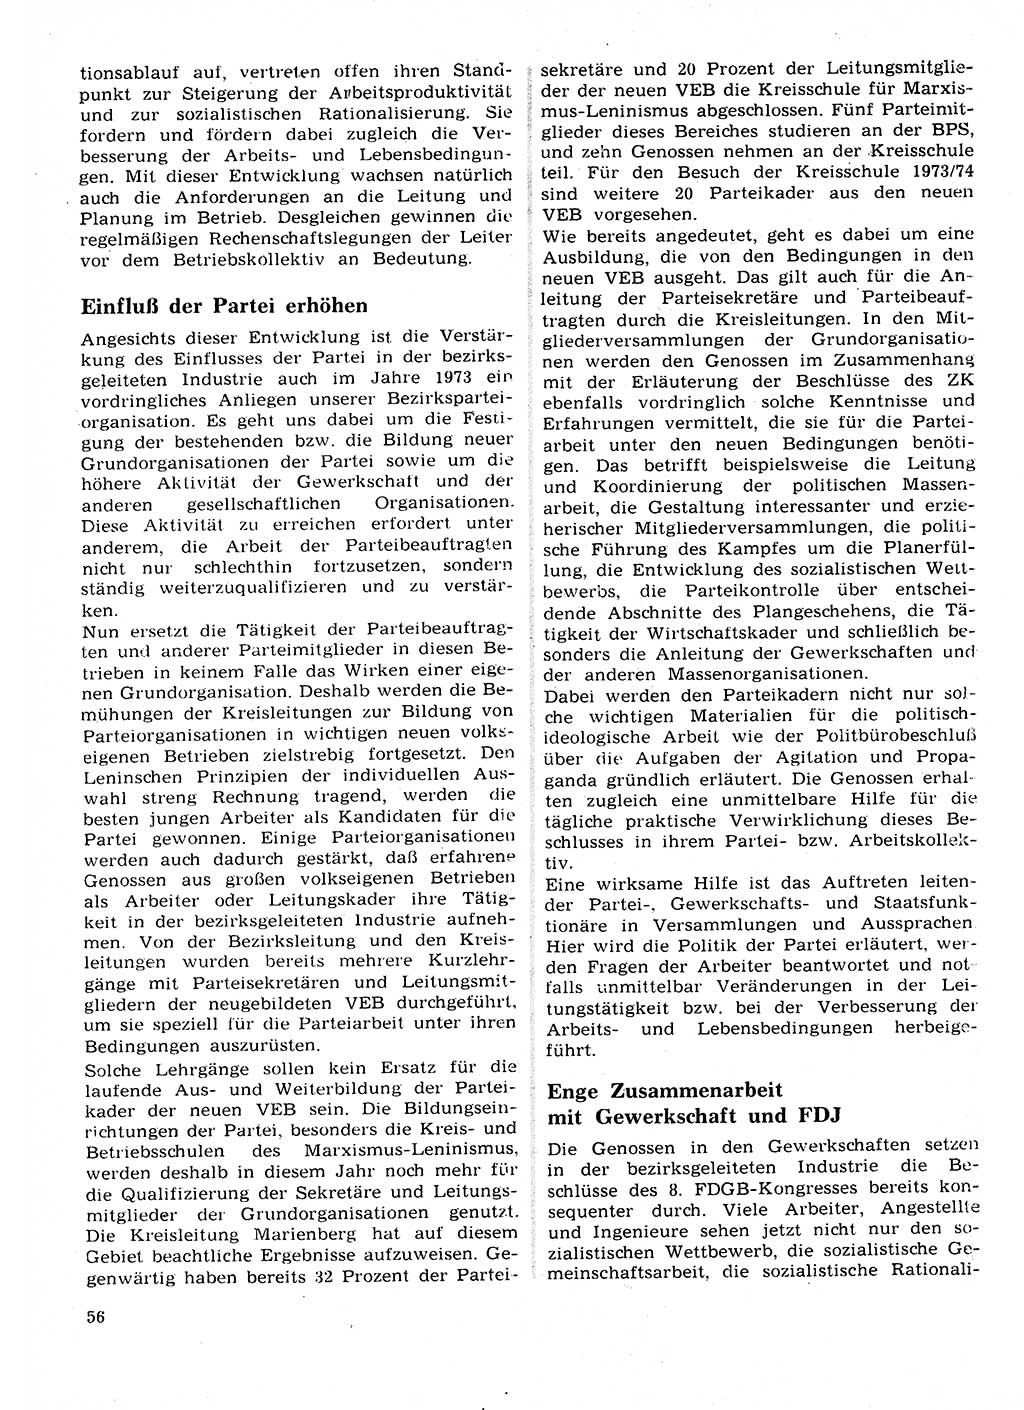 Neuer Weg (NW), Organ des Zentralkomitees (ZK) der SED (Sozialistische Einheitspartei Deutschlands) für Fragen des Parteilebens, 28. Jahrgang [Deutsche Demokratische Republik (DDR)] 1973, Seite 56 (NW ZK SED DDR 1973, S. 56)